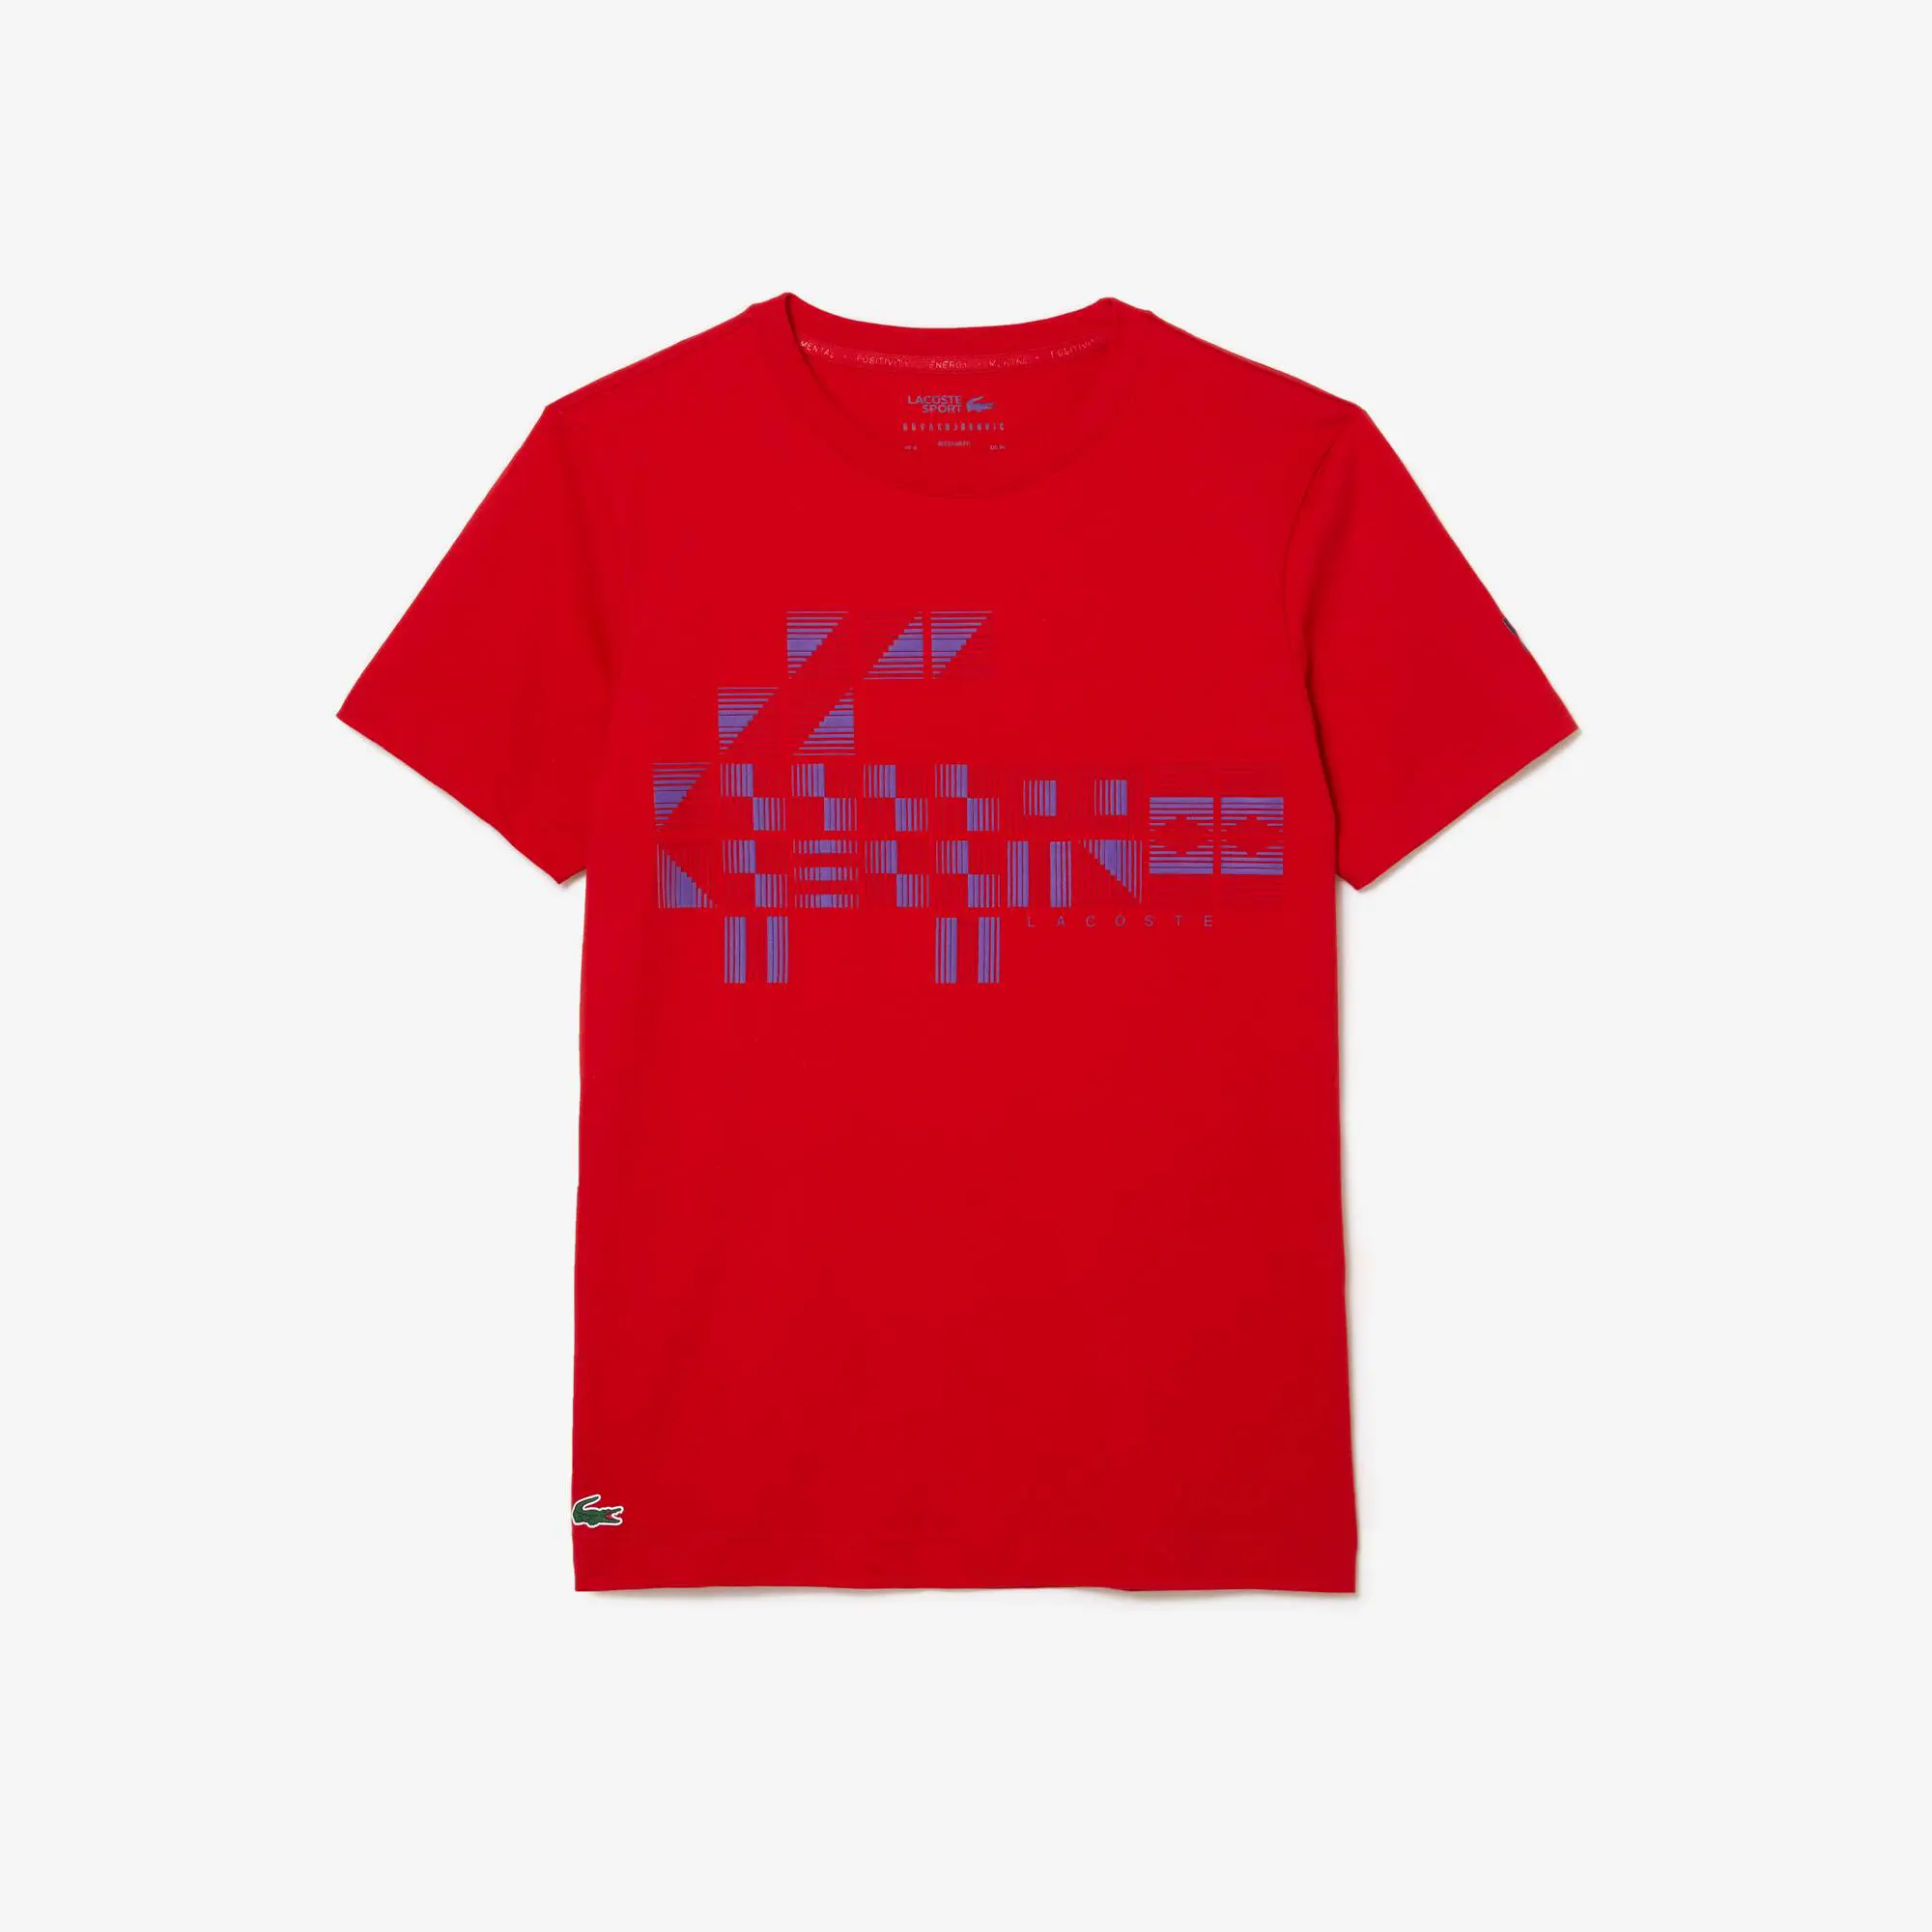 Lacoste T-shirt homme Lacoste SPORT x Novak Djokovic avec imprimé. 2